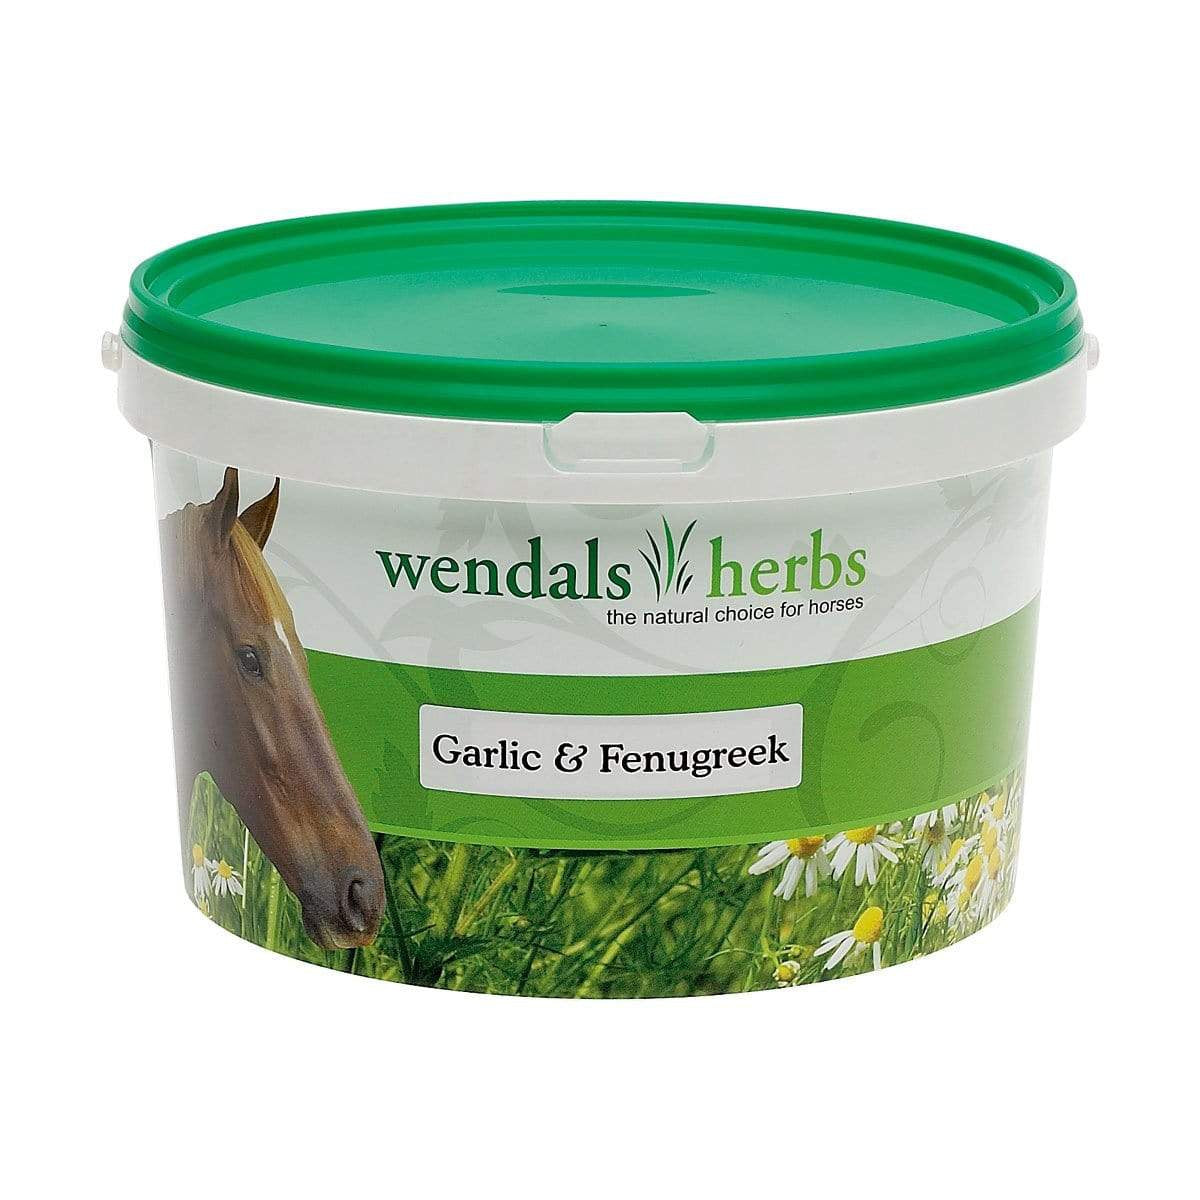 Wendals Herbs Garlic & Fenugreek